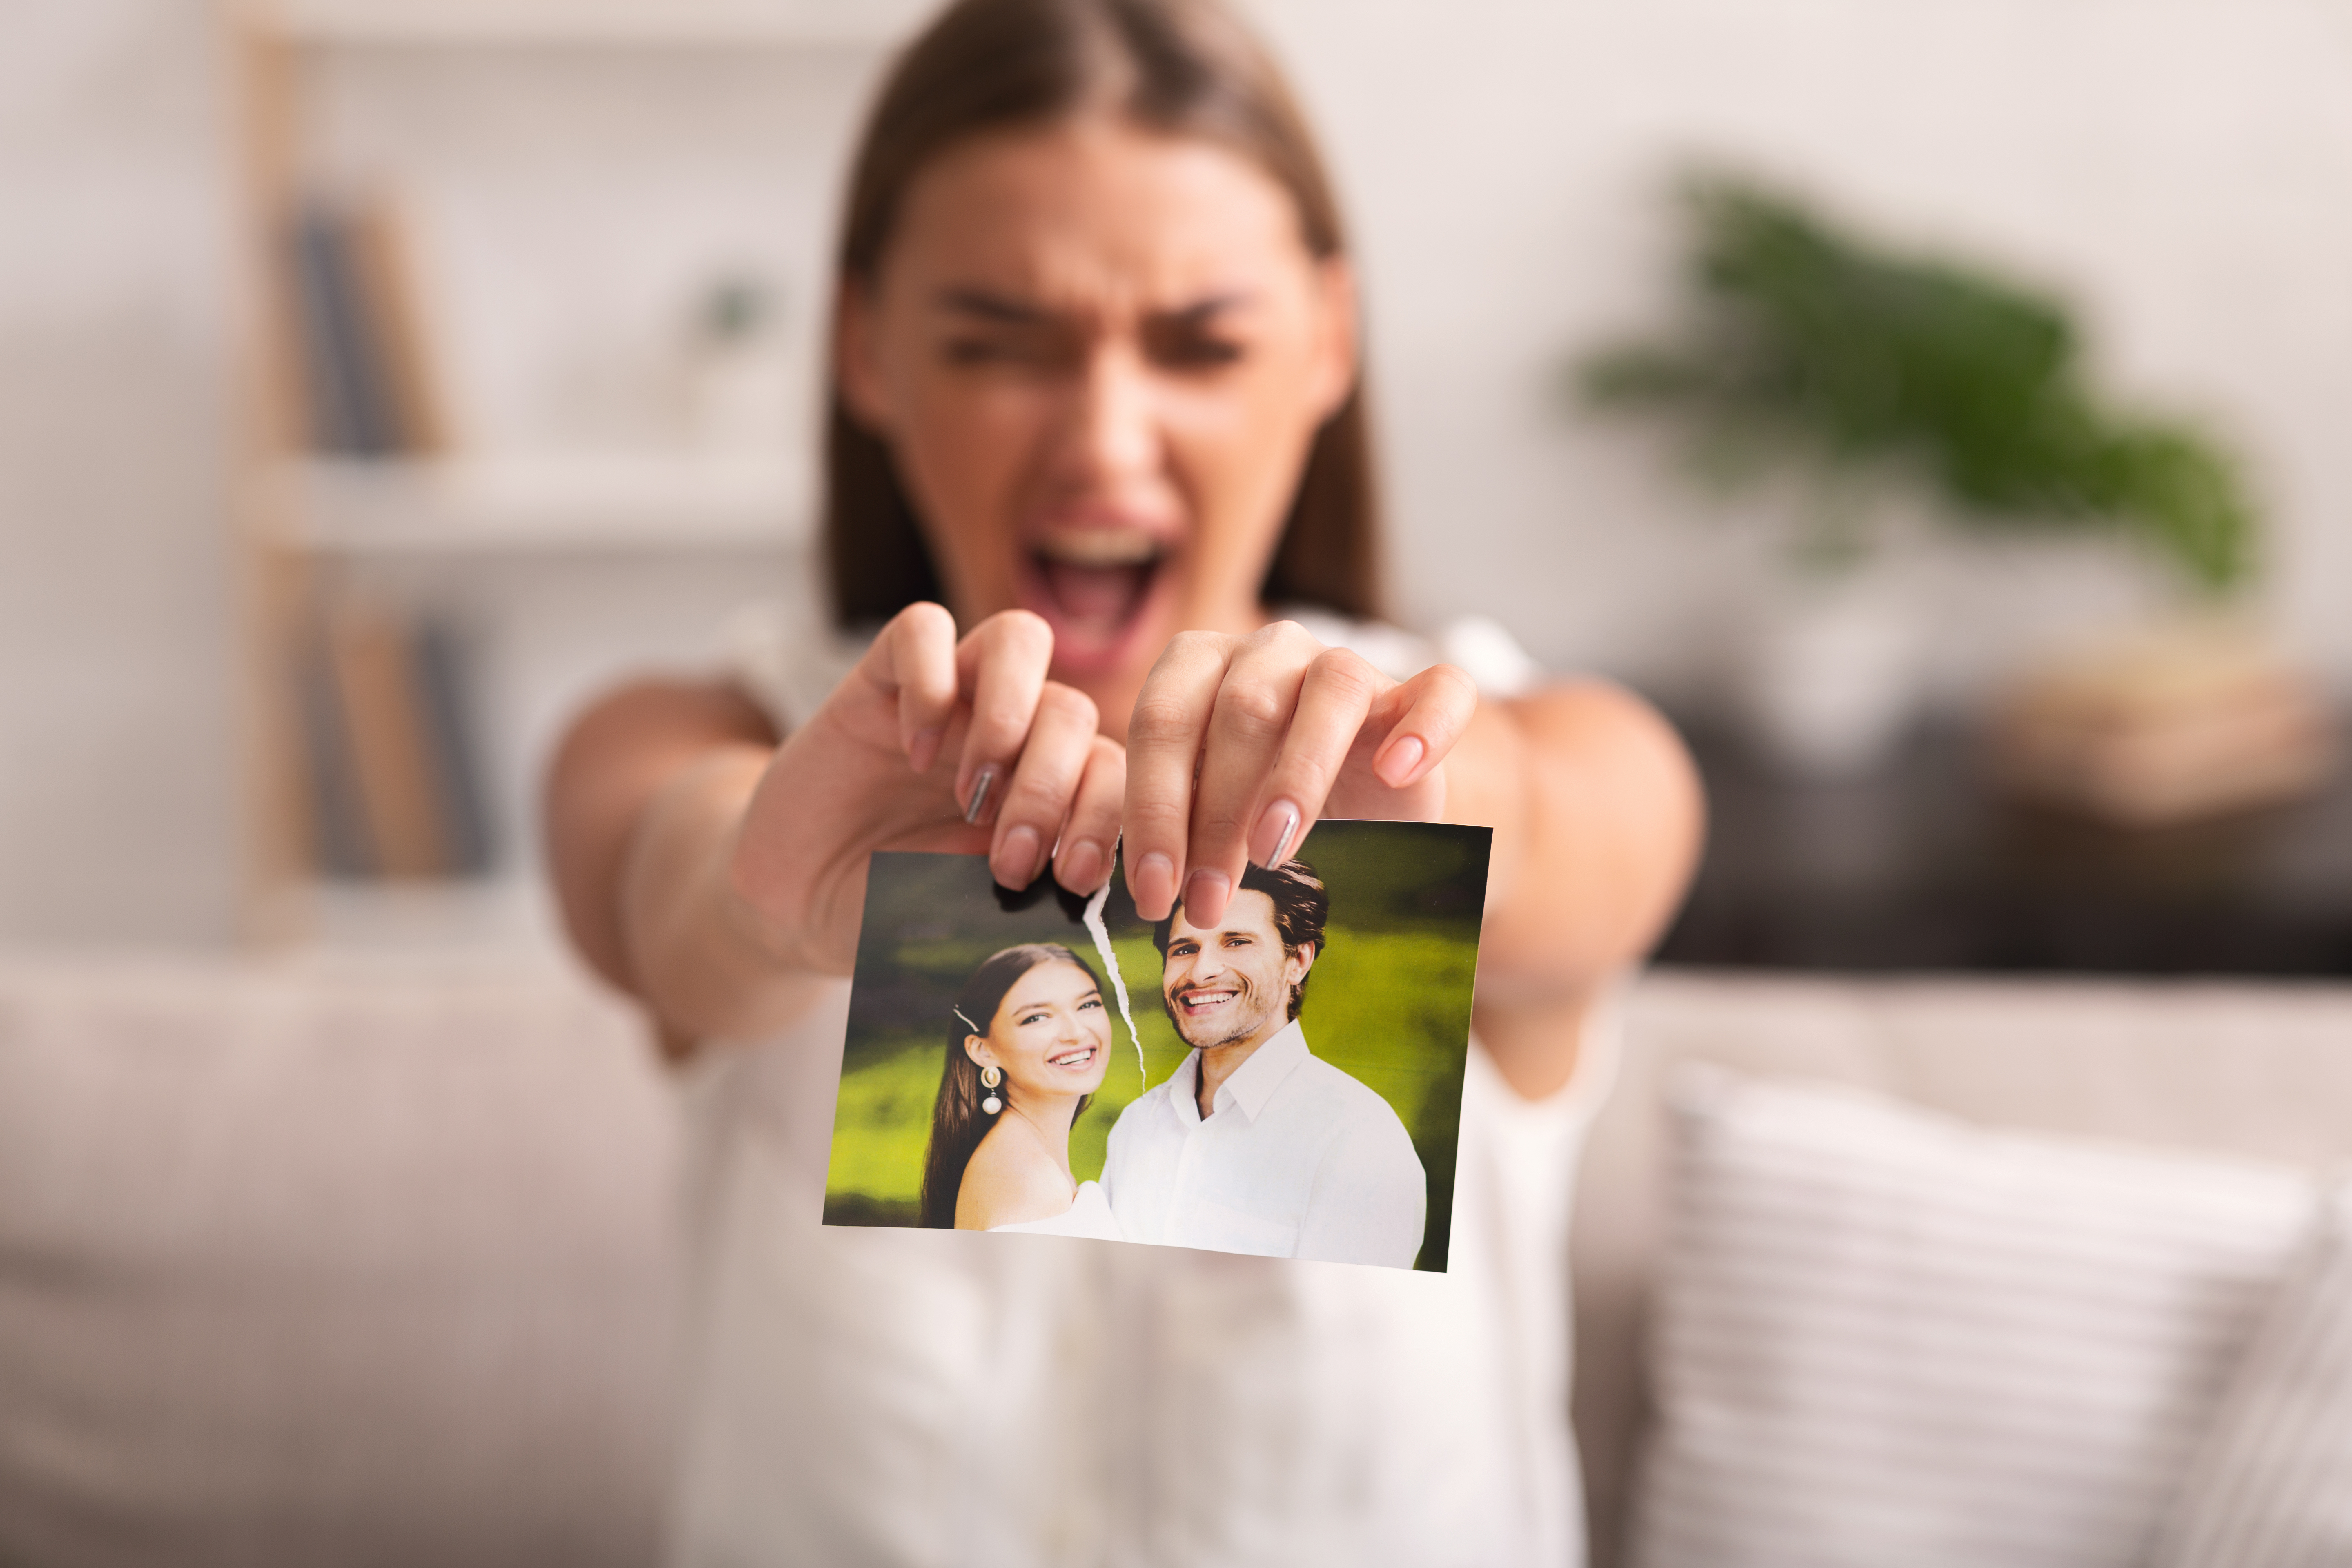 Une femme qui déchire une photo d'elle et d'un homme | Source : Shutterstock